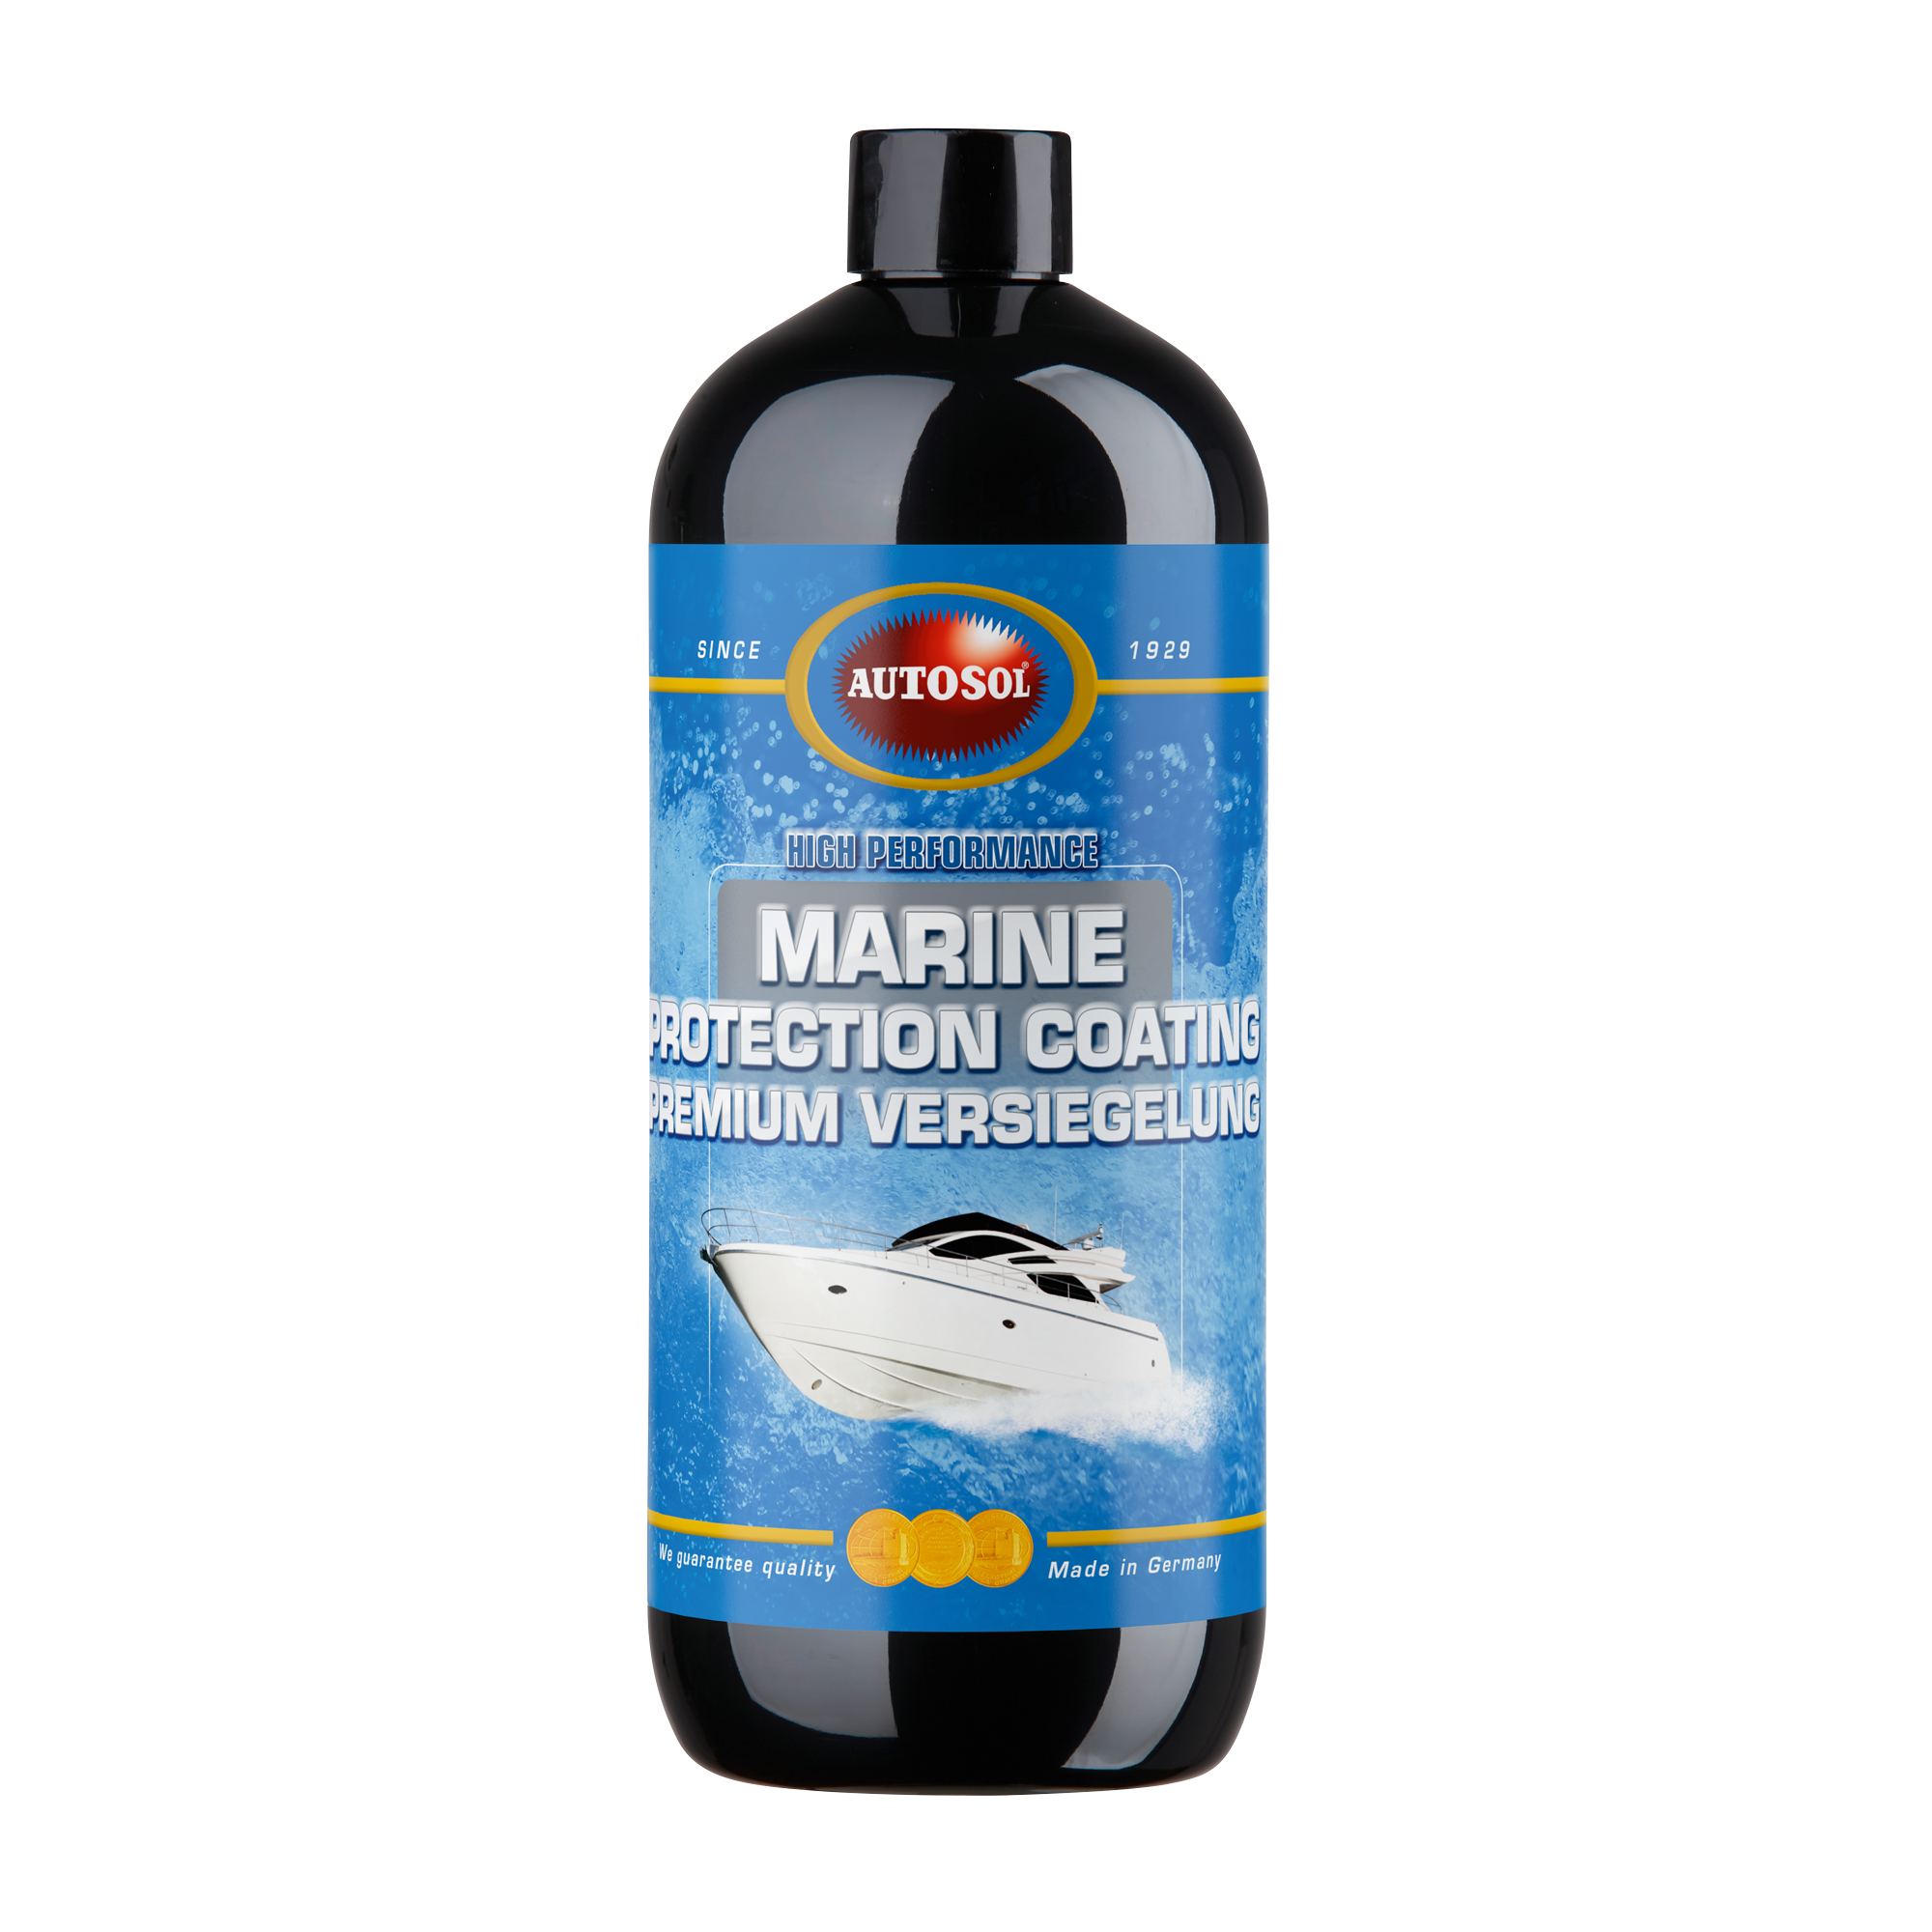 Autosol Marine Premium Versiegelung, 1 Liter